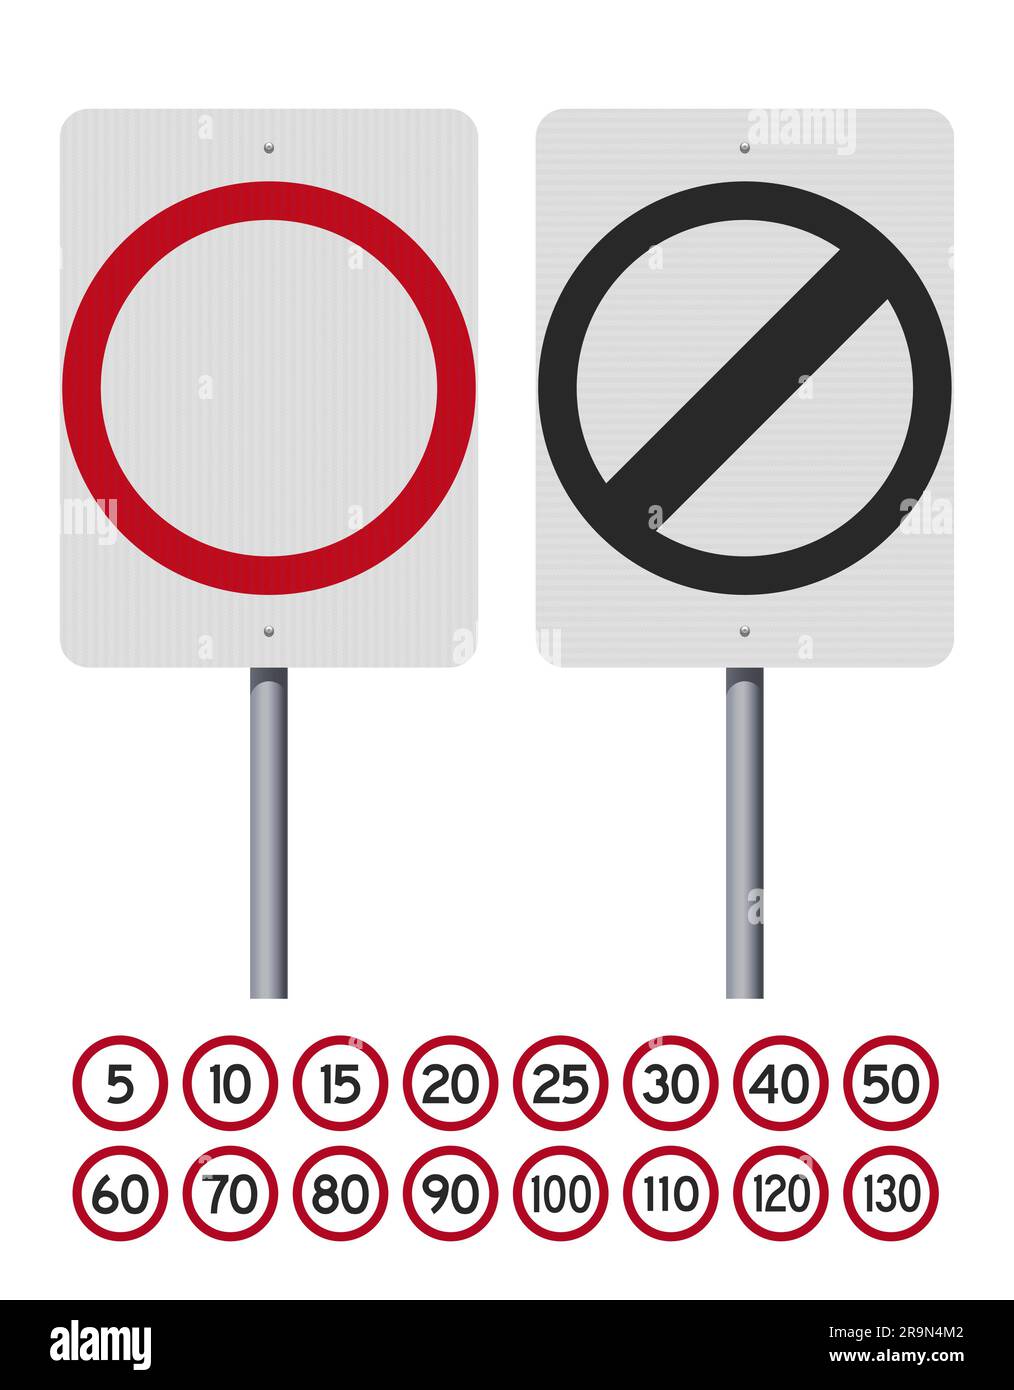 Illustrazione vettoriale della segnaletica stradale del limite di velocità australiano su palo metallico (numeri facilmente modificabili) Illustrazione Vettoriale